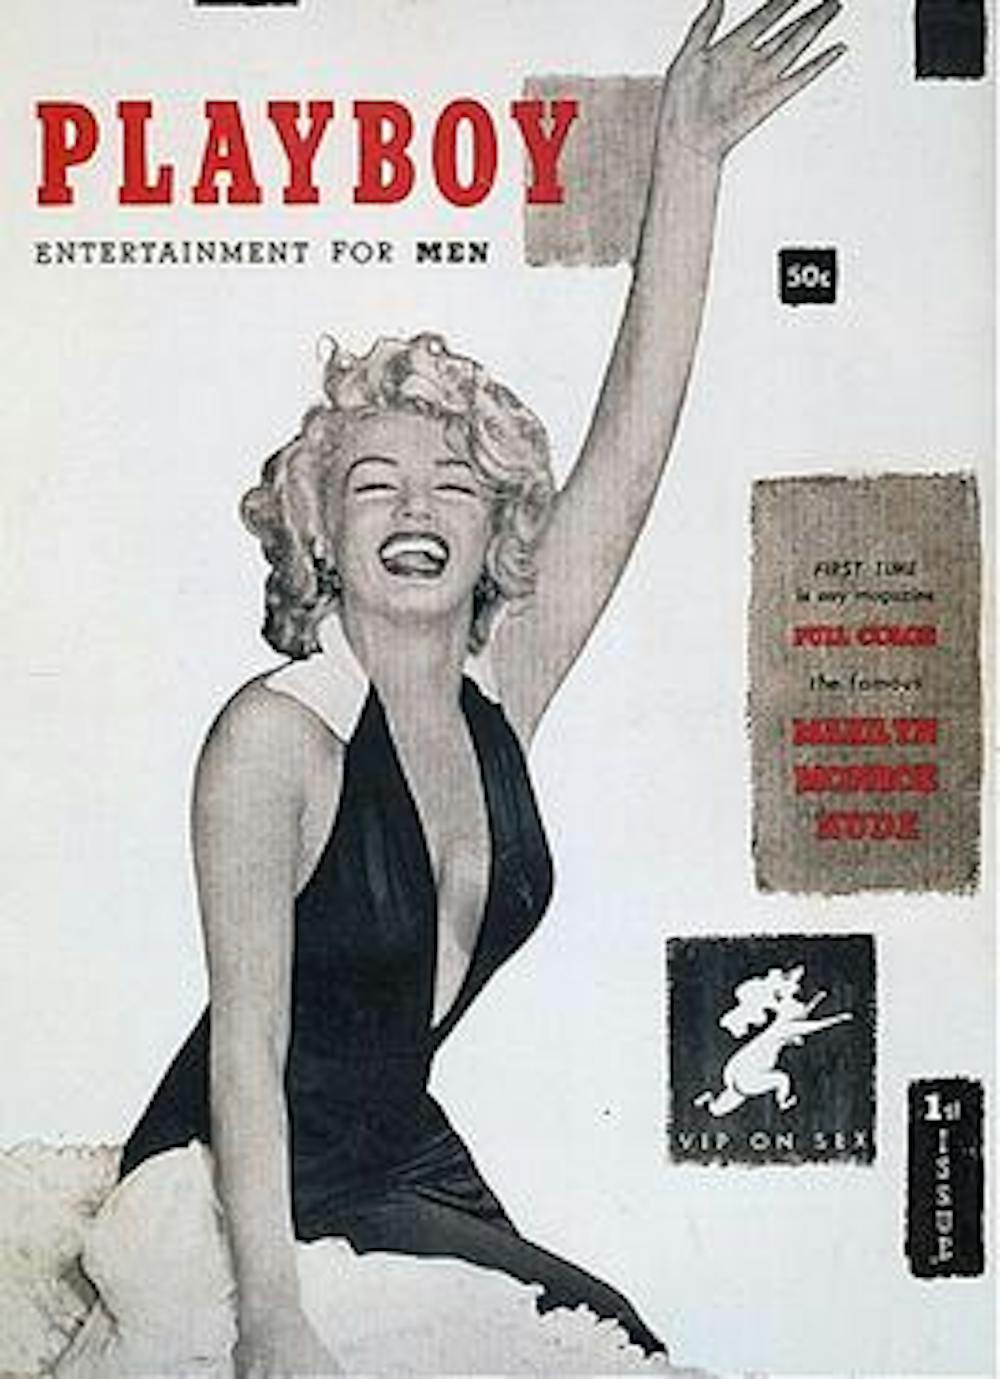 File:Marilyn Monroe in 1952.jpg - Wikimedia Commons